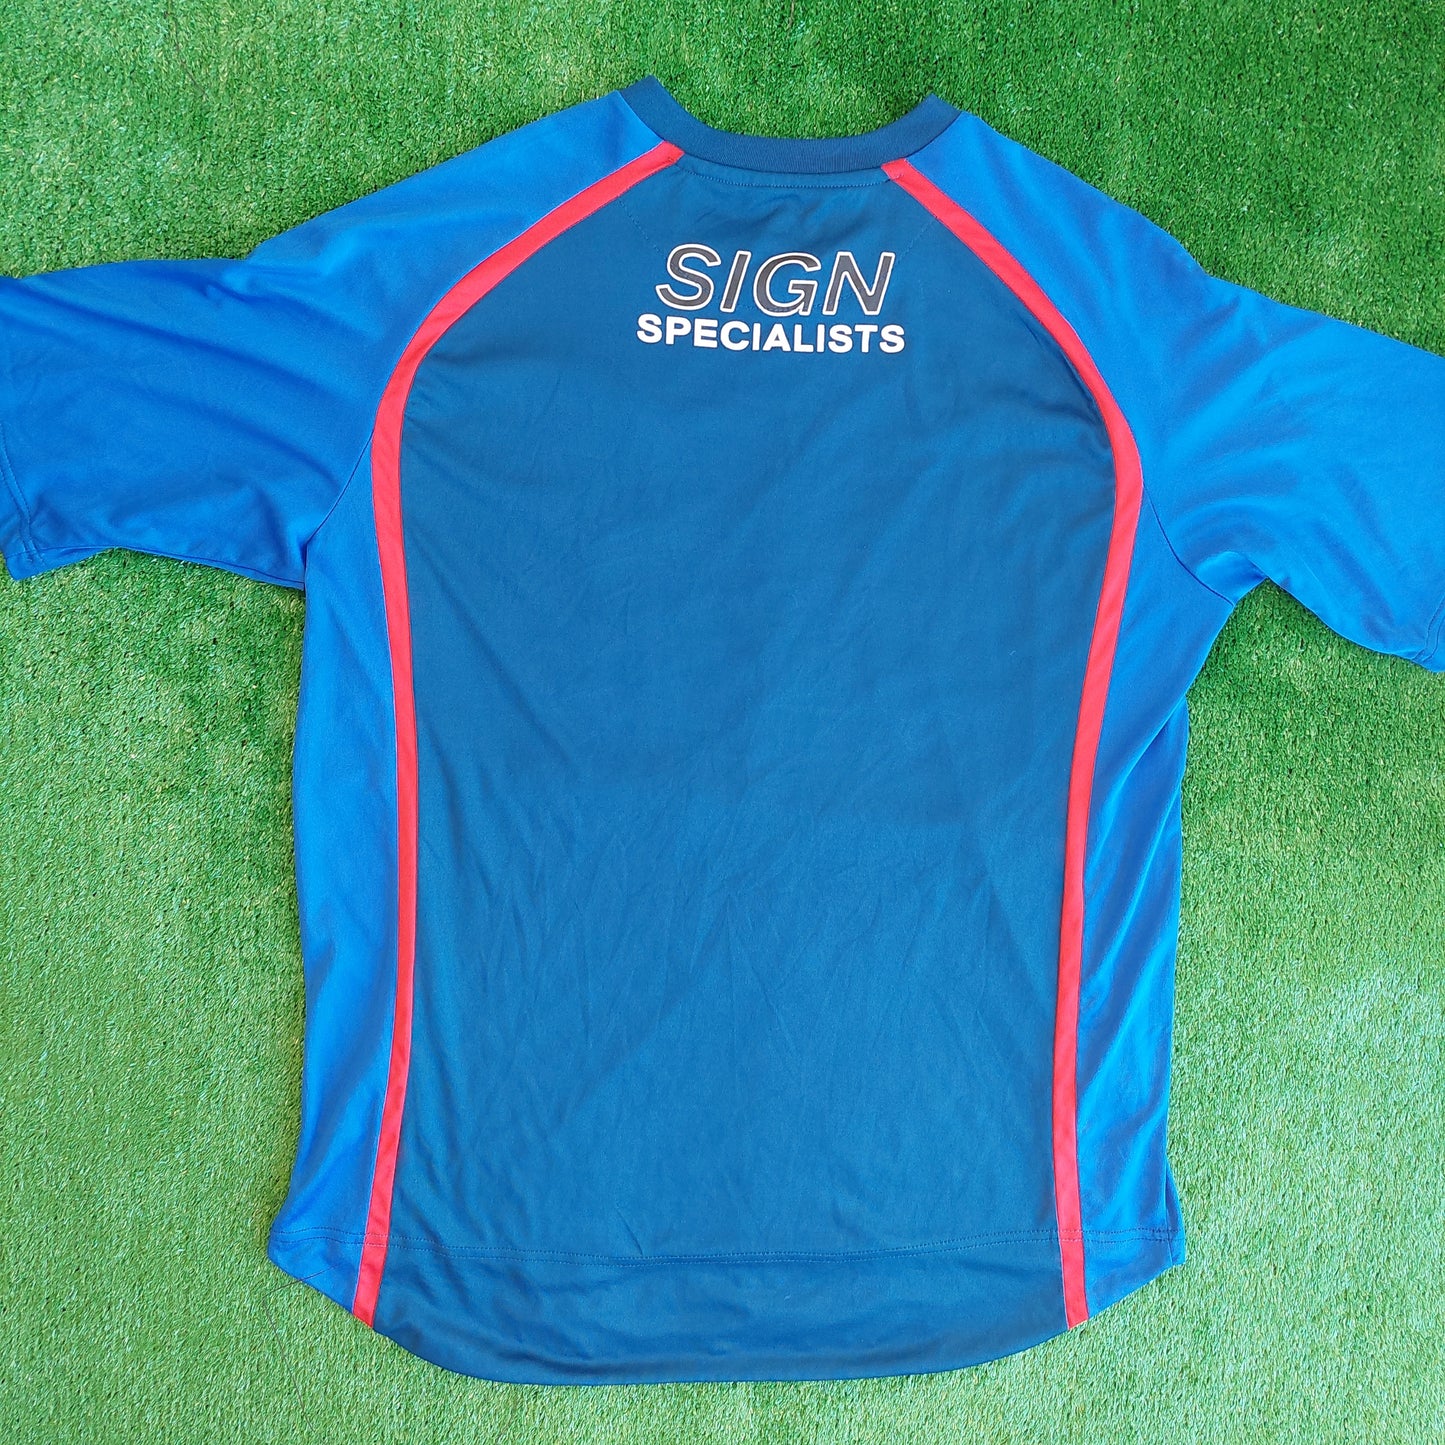 Walsall 2010/11 Away Shirt (Very Good) - Size XL